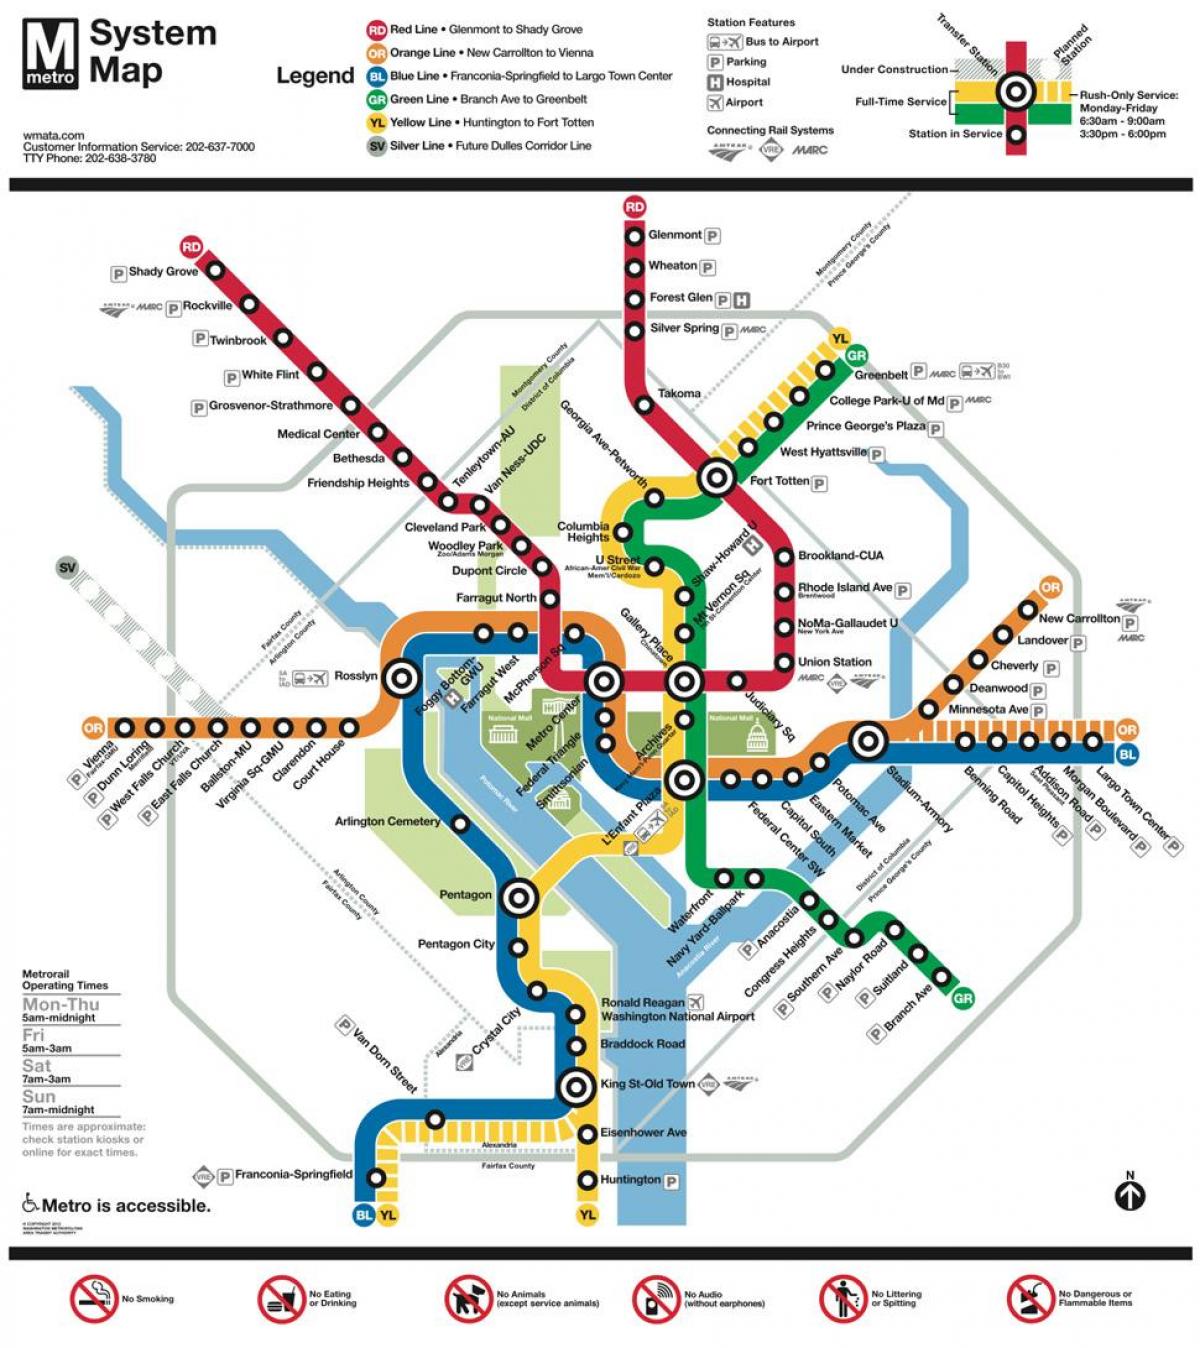 dca χάρτη του μετρό